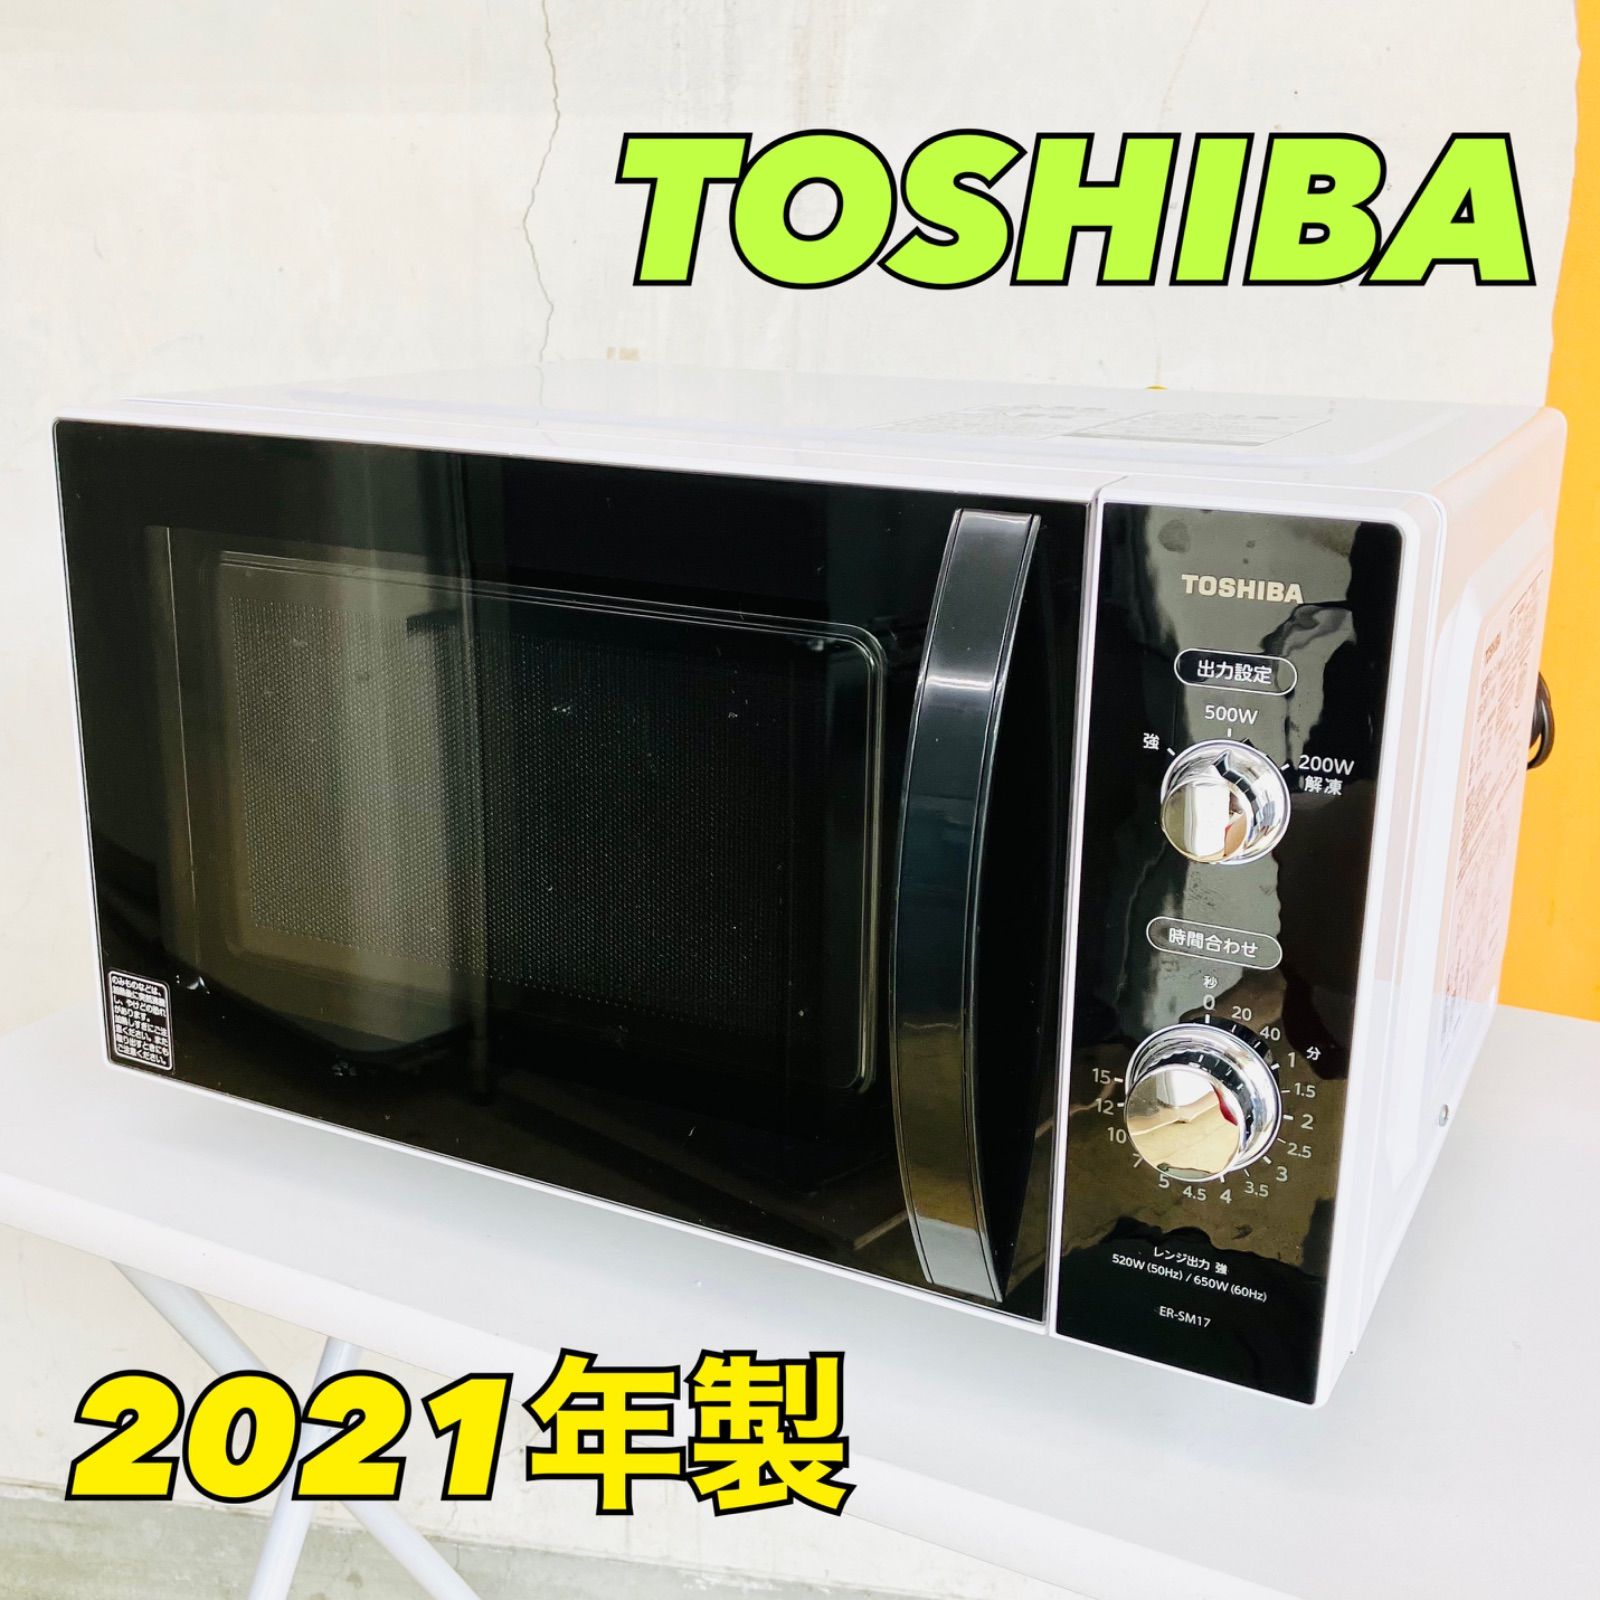 TOSHIBA 電子レンジ ER-SM17 フラット庫内 - 電子レンジ・オーブン